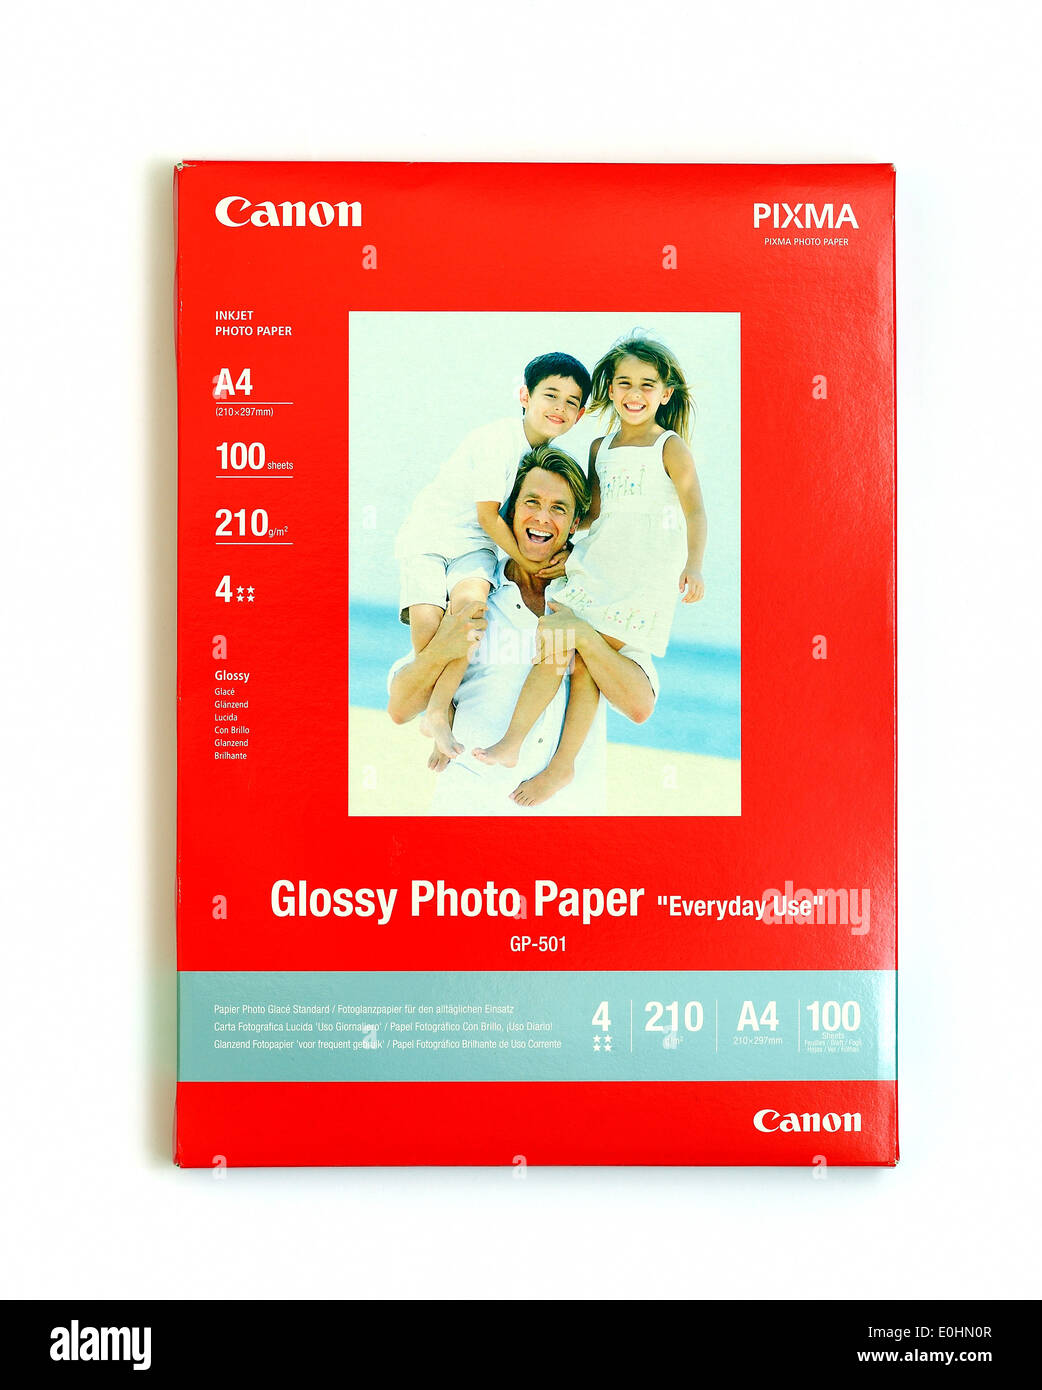 Pack de canon photo imprime en papel de tamaño A4 de 210g de peso Foto de stock